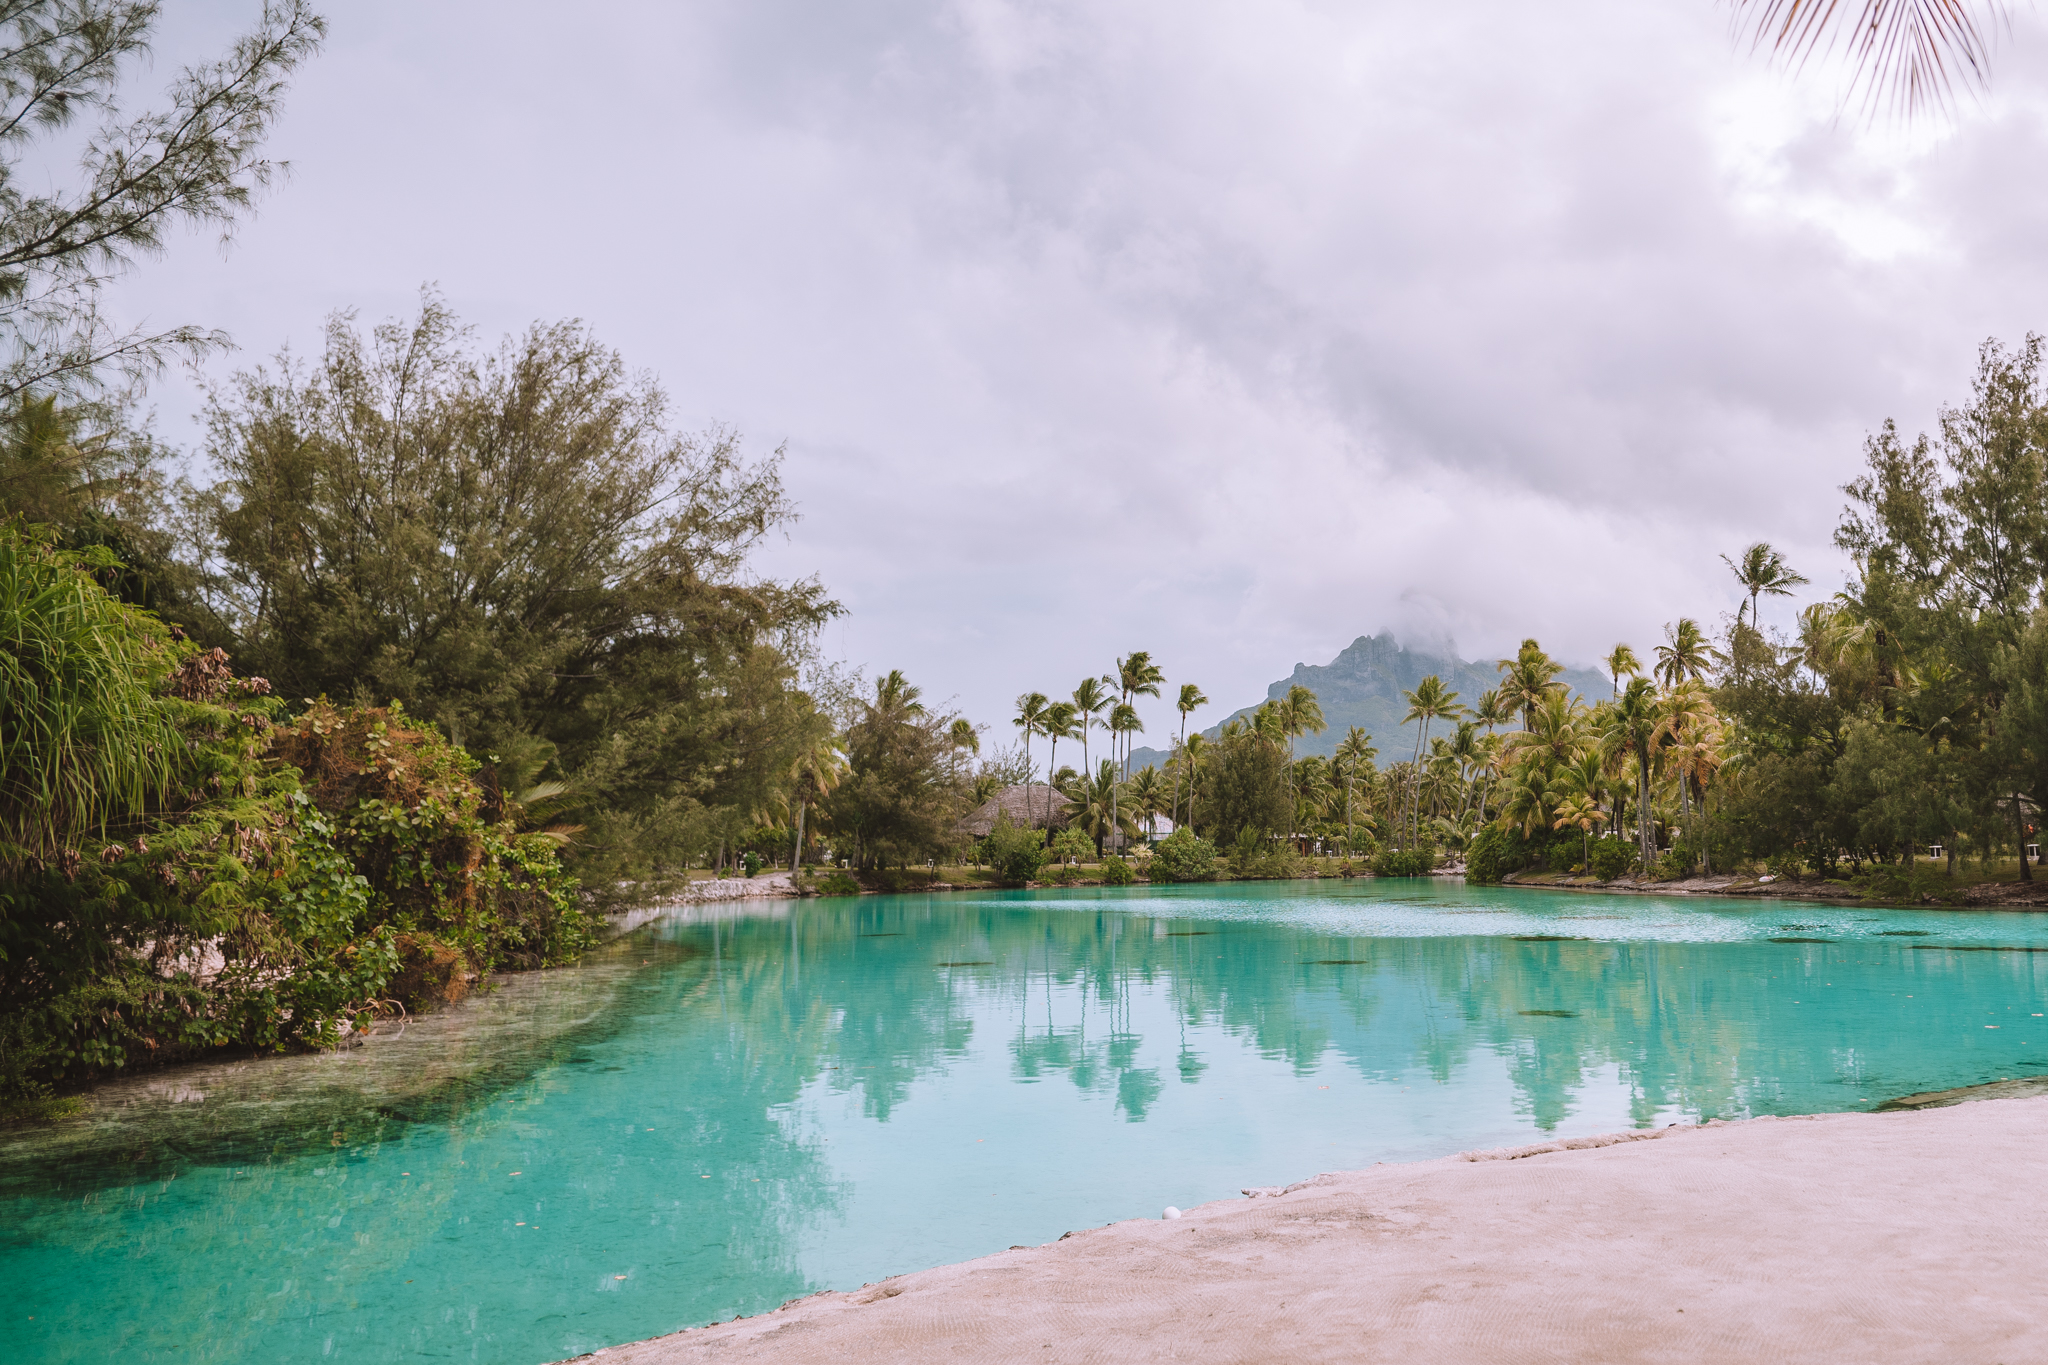 St. Regis Bora Bora, French Polynesia: Discover One of The Most Elaborate and Pristine Hotels in Bora Bora